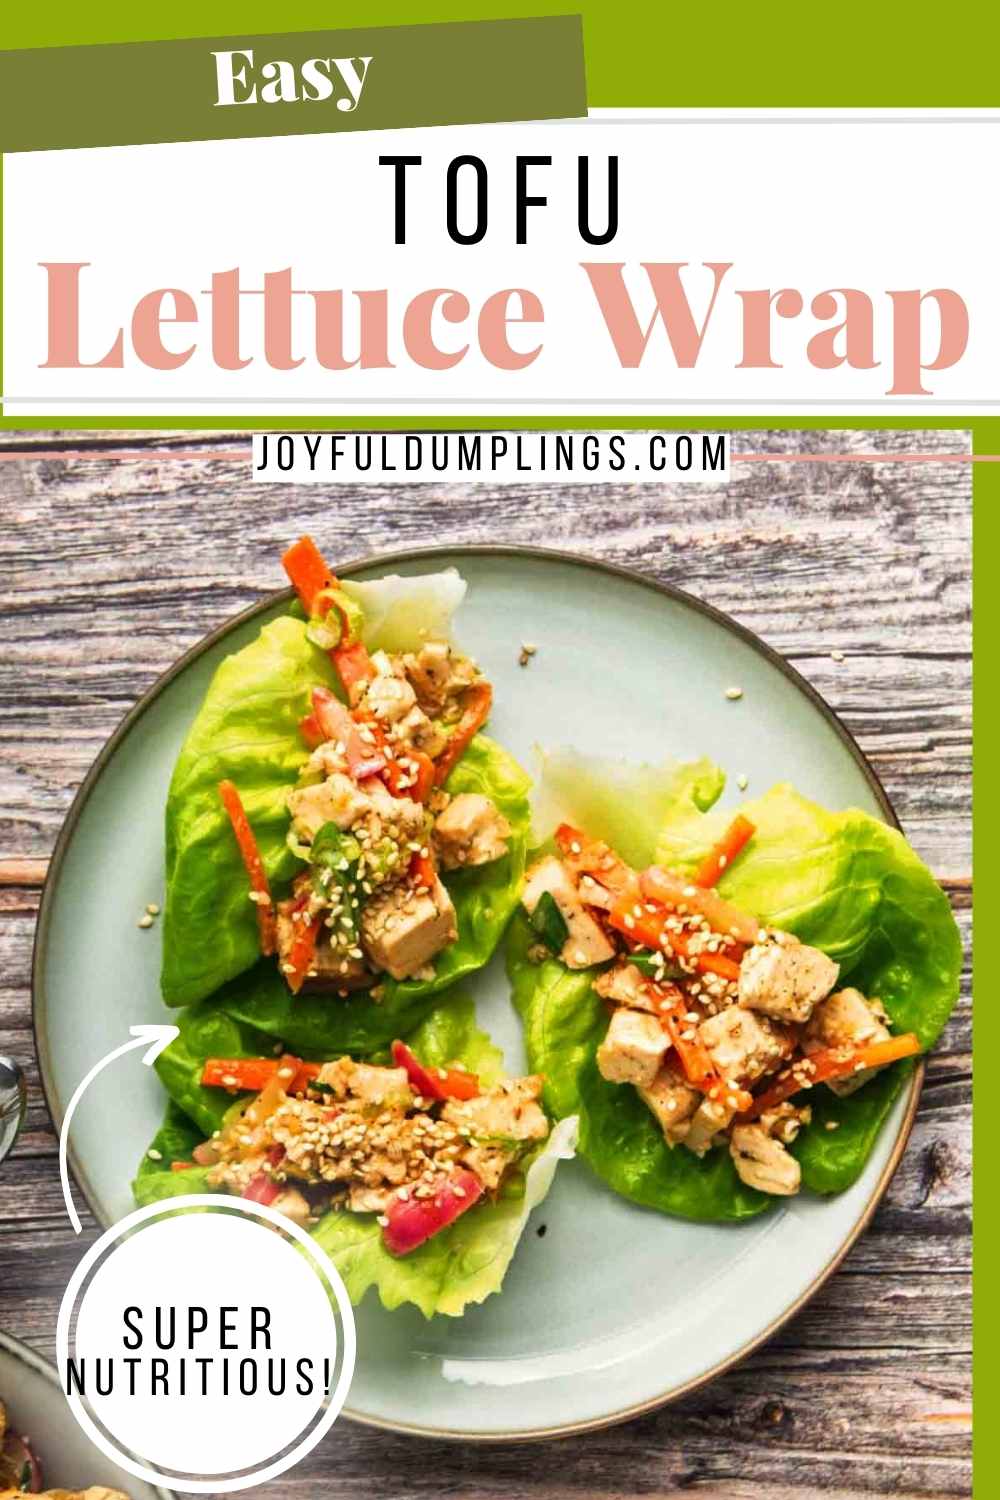 lettuce wraps vegetarian recipe